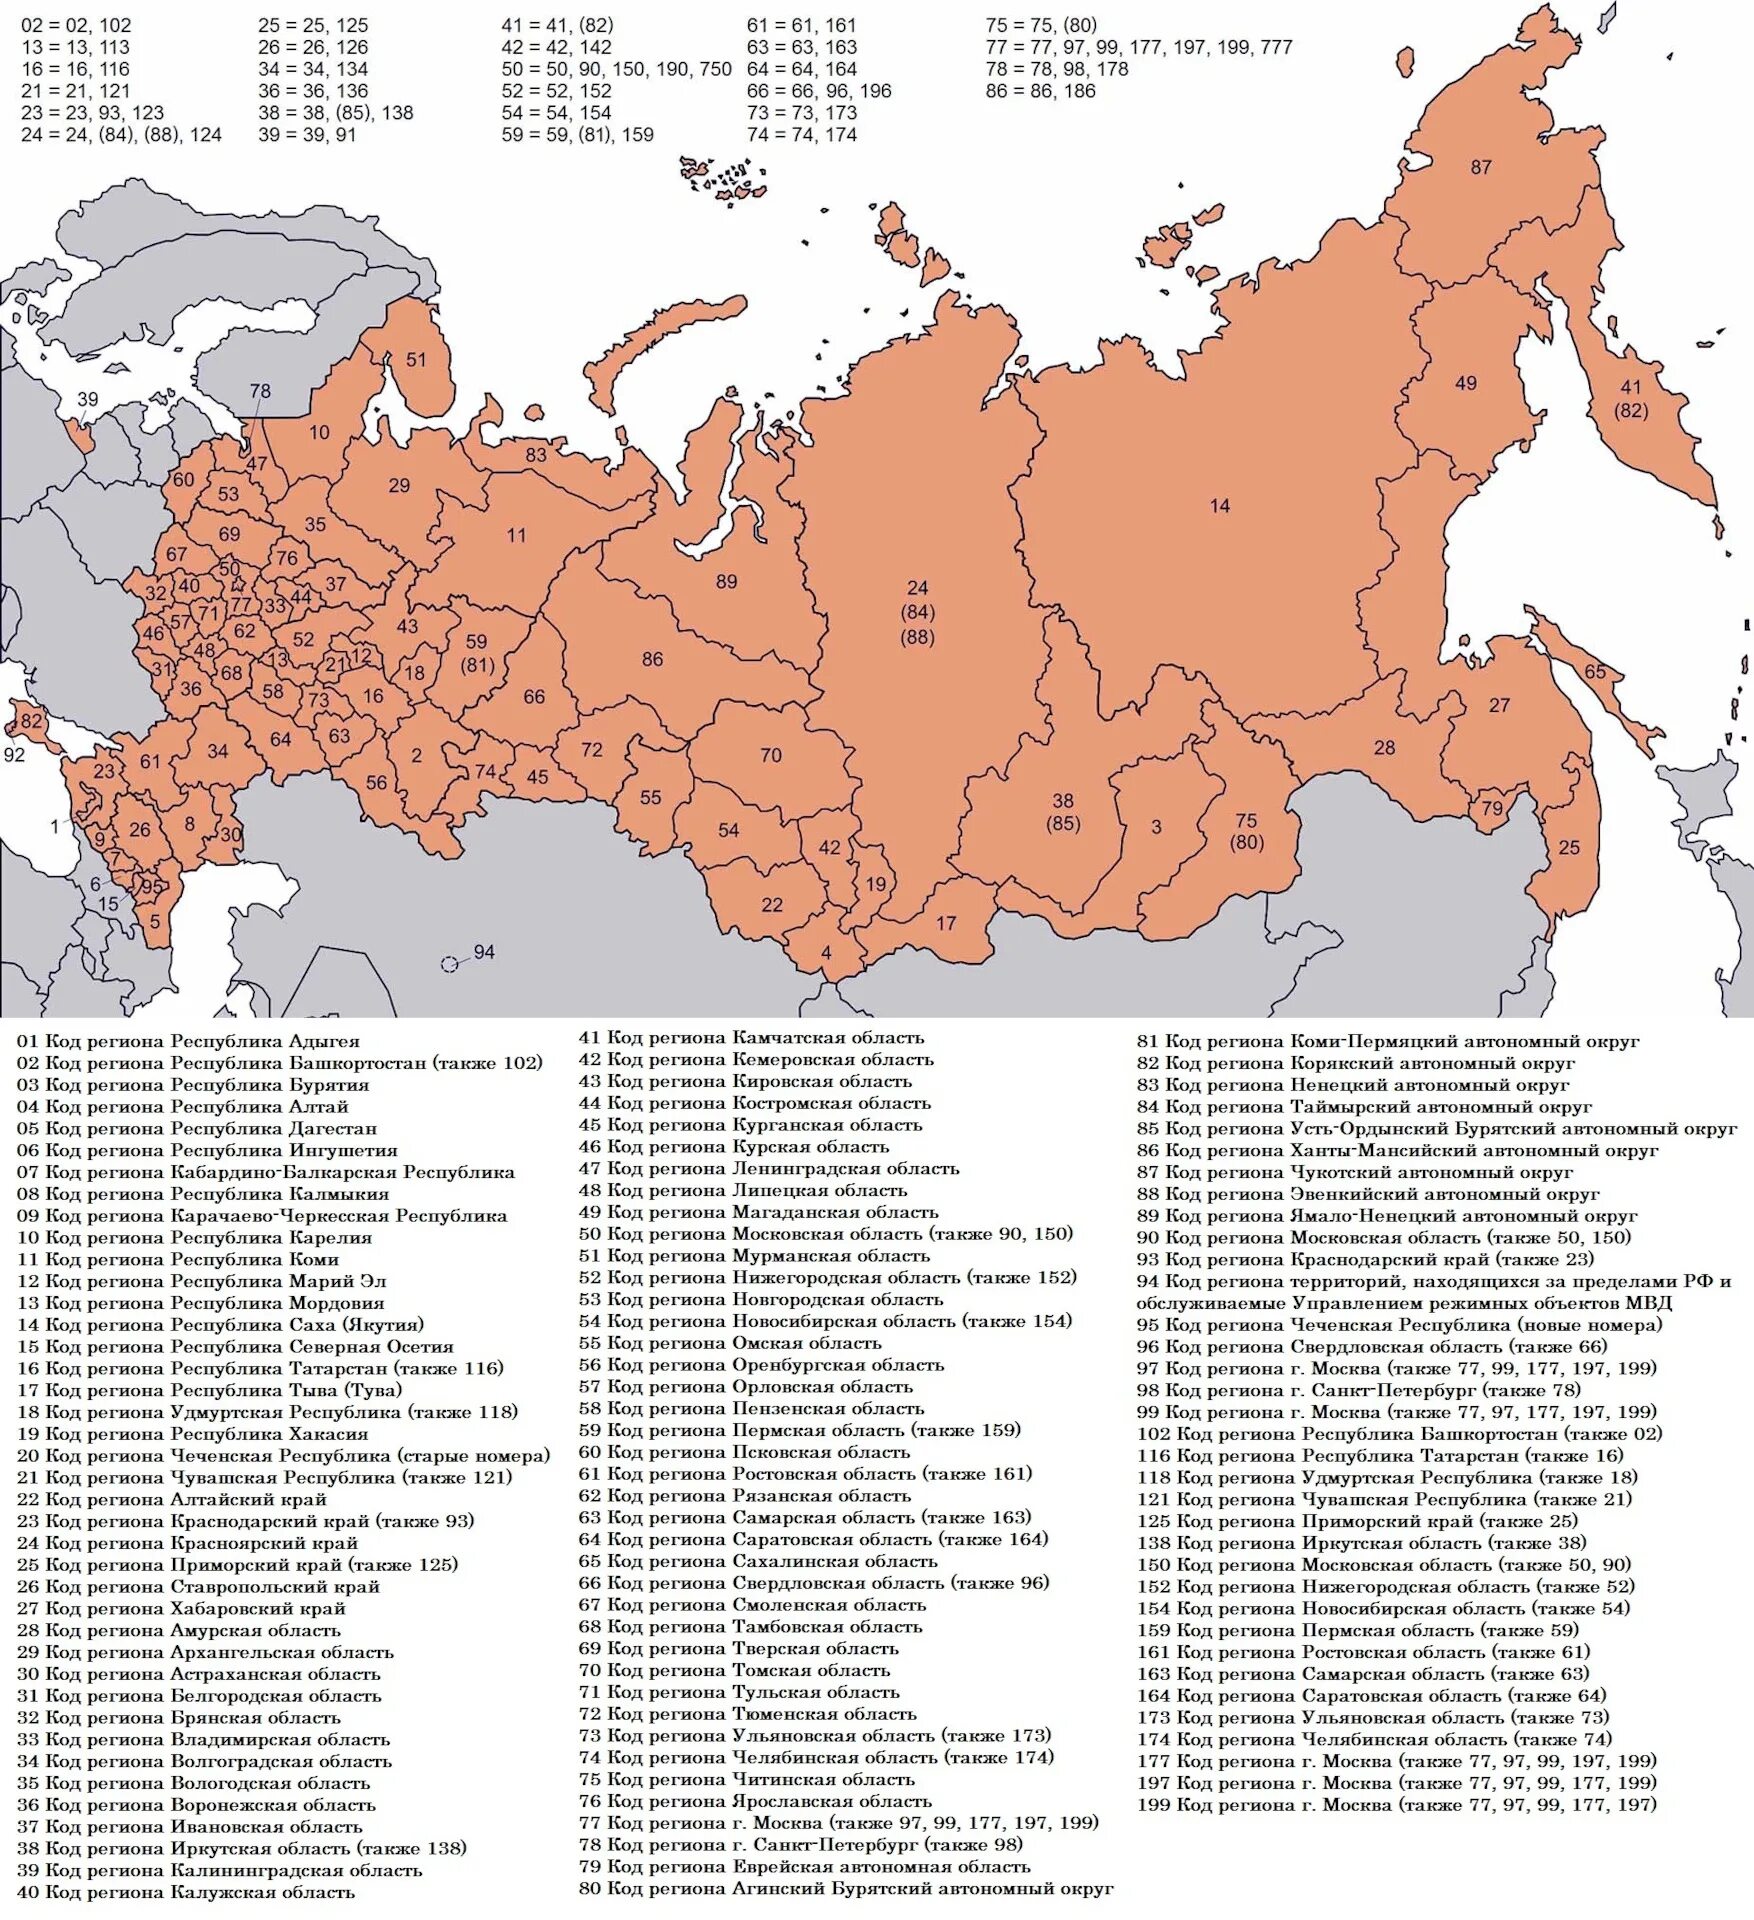 Все новые регионы. Коды регионов на автомобильных. Kodi regionov. Карта автомобильных регионов России. Автомобильные коды регионов России таблица.